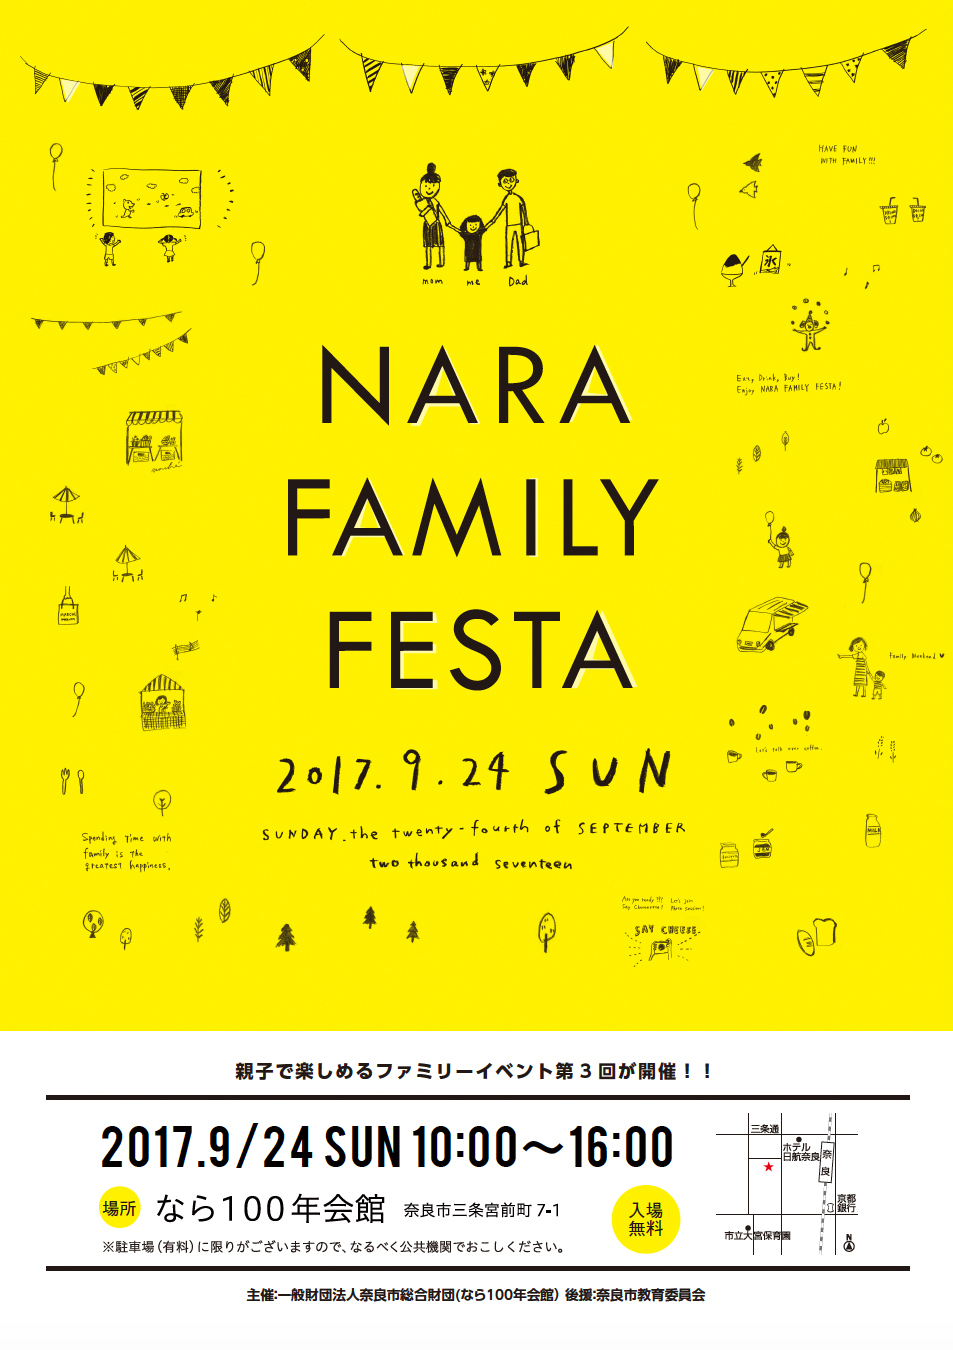 2017.9.24（日）なら100年会館「NARA FAMILY FESTA」